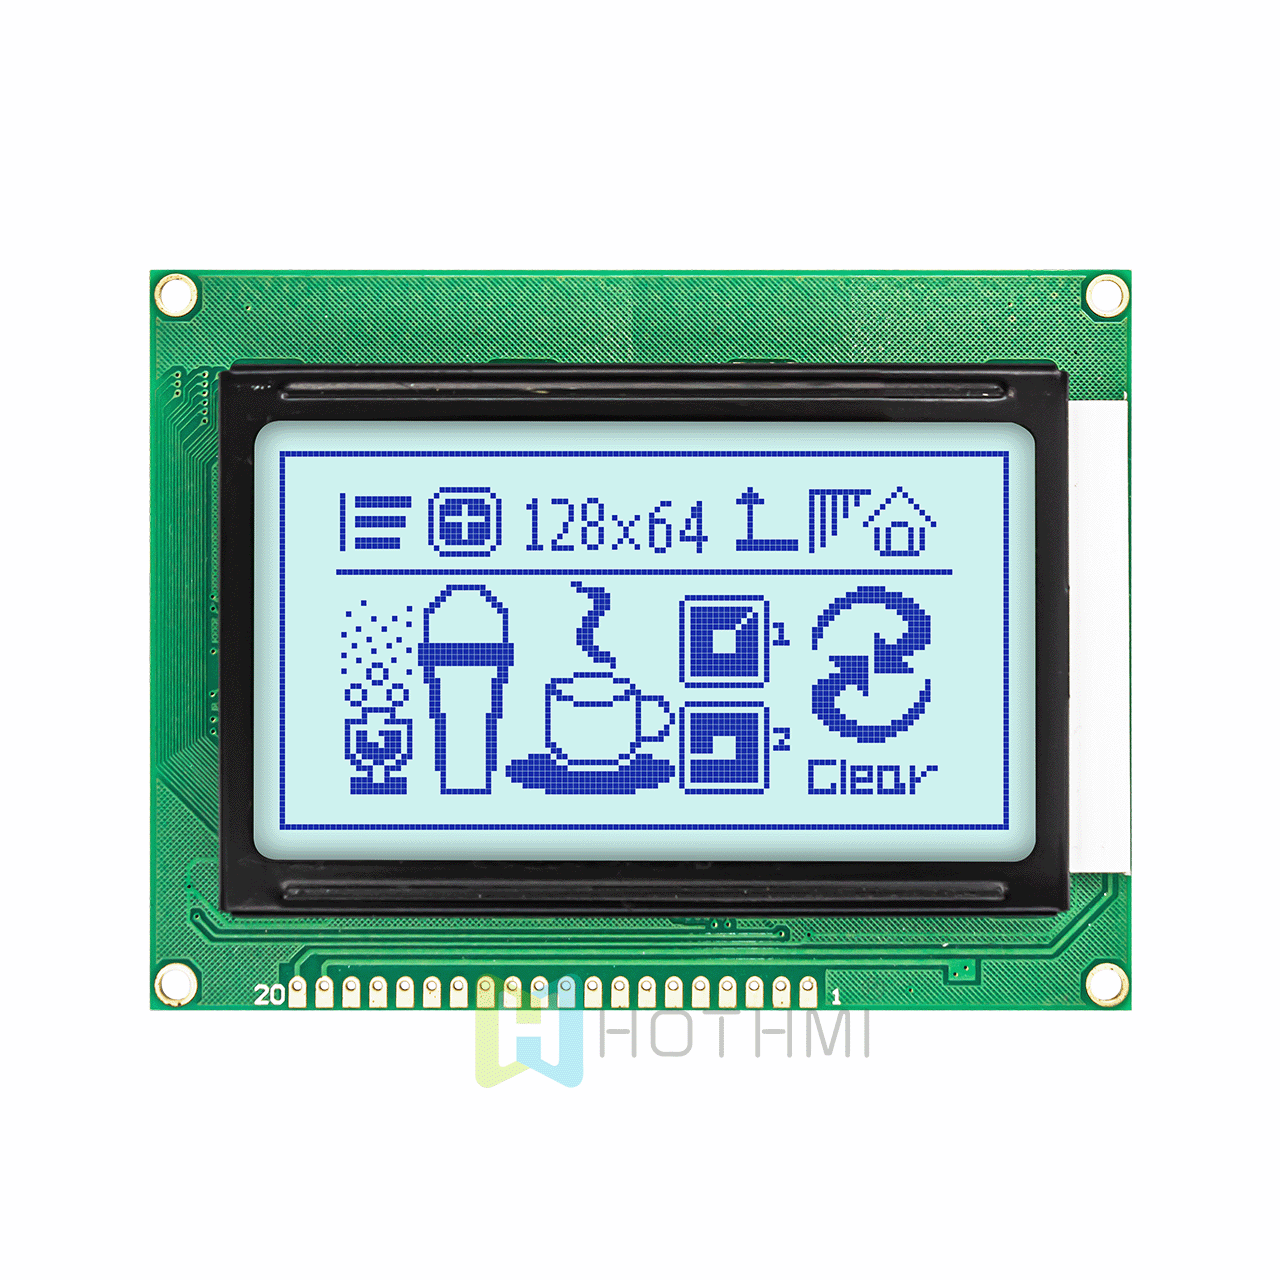 3.2  英寸低成本白色背光  | 128x64 图形 LCD 模块 | ST7920 | MCU接口 |  适用于 Arduino